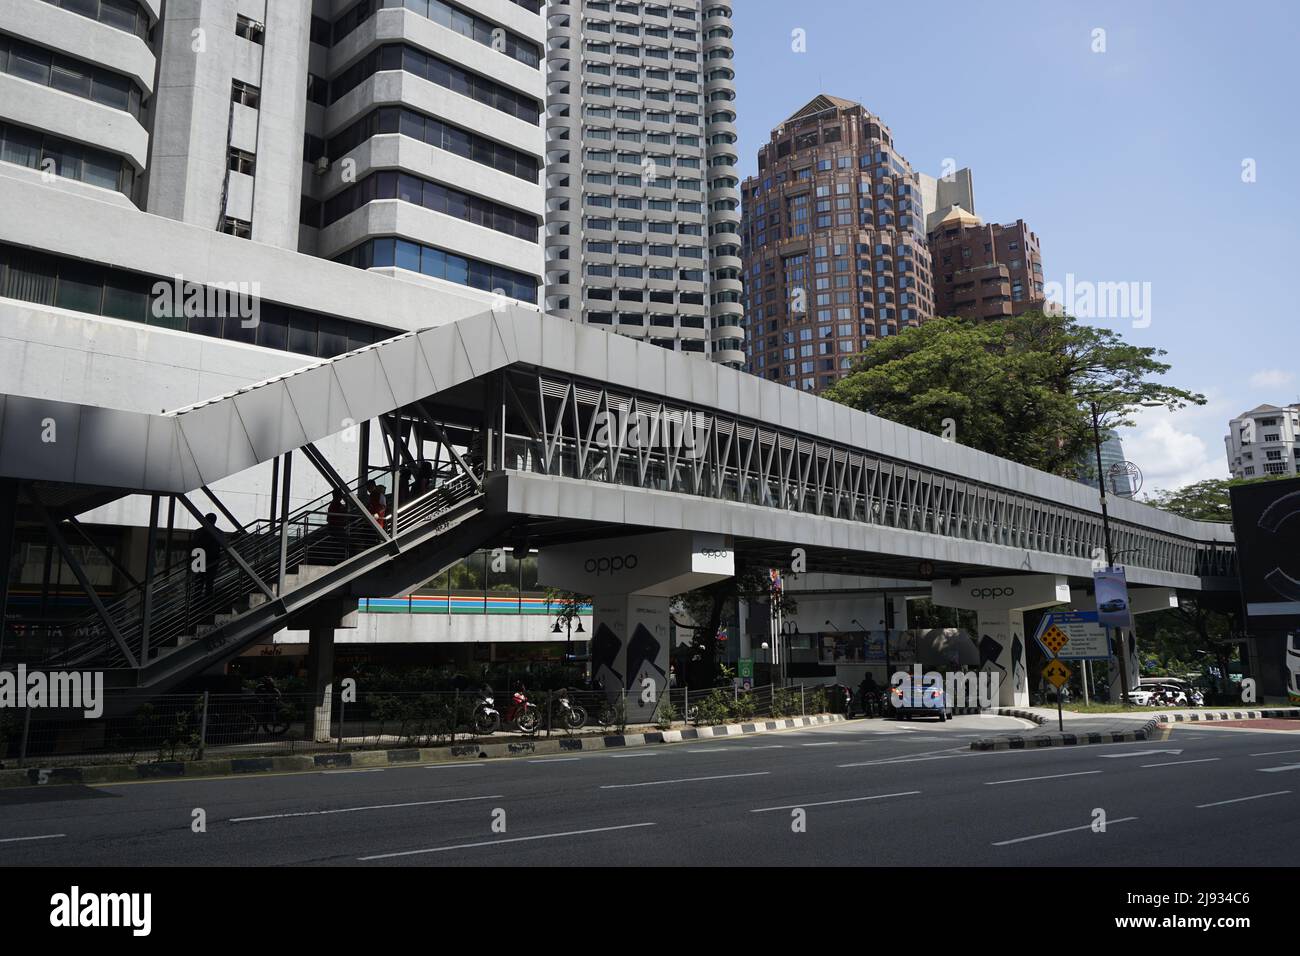 Pasarela peatonal KLCC-Bukit Bintang, Kuala Lumpur, Malasia Foto de stock